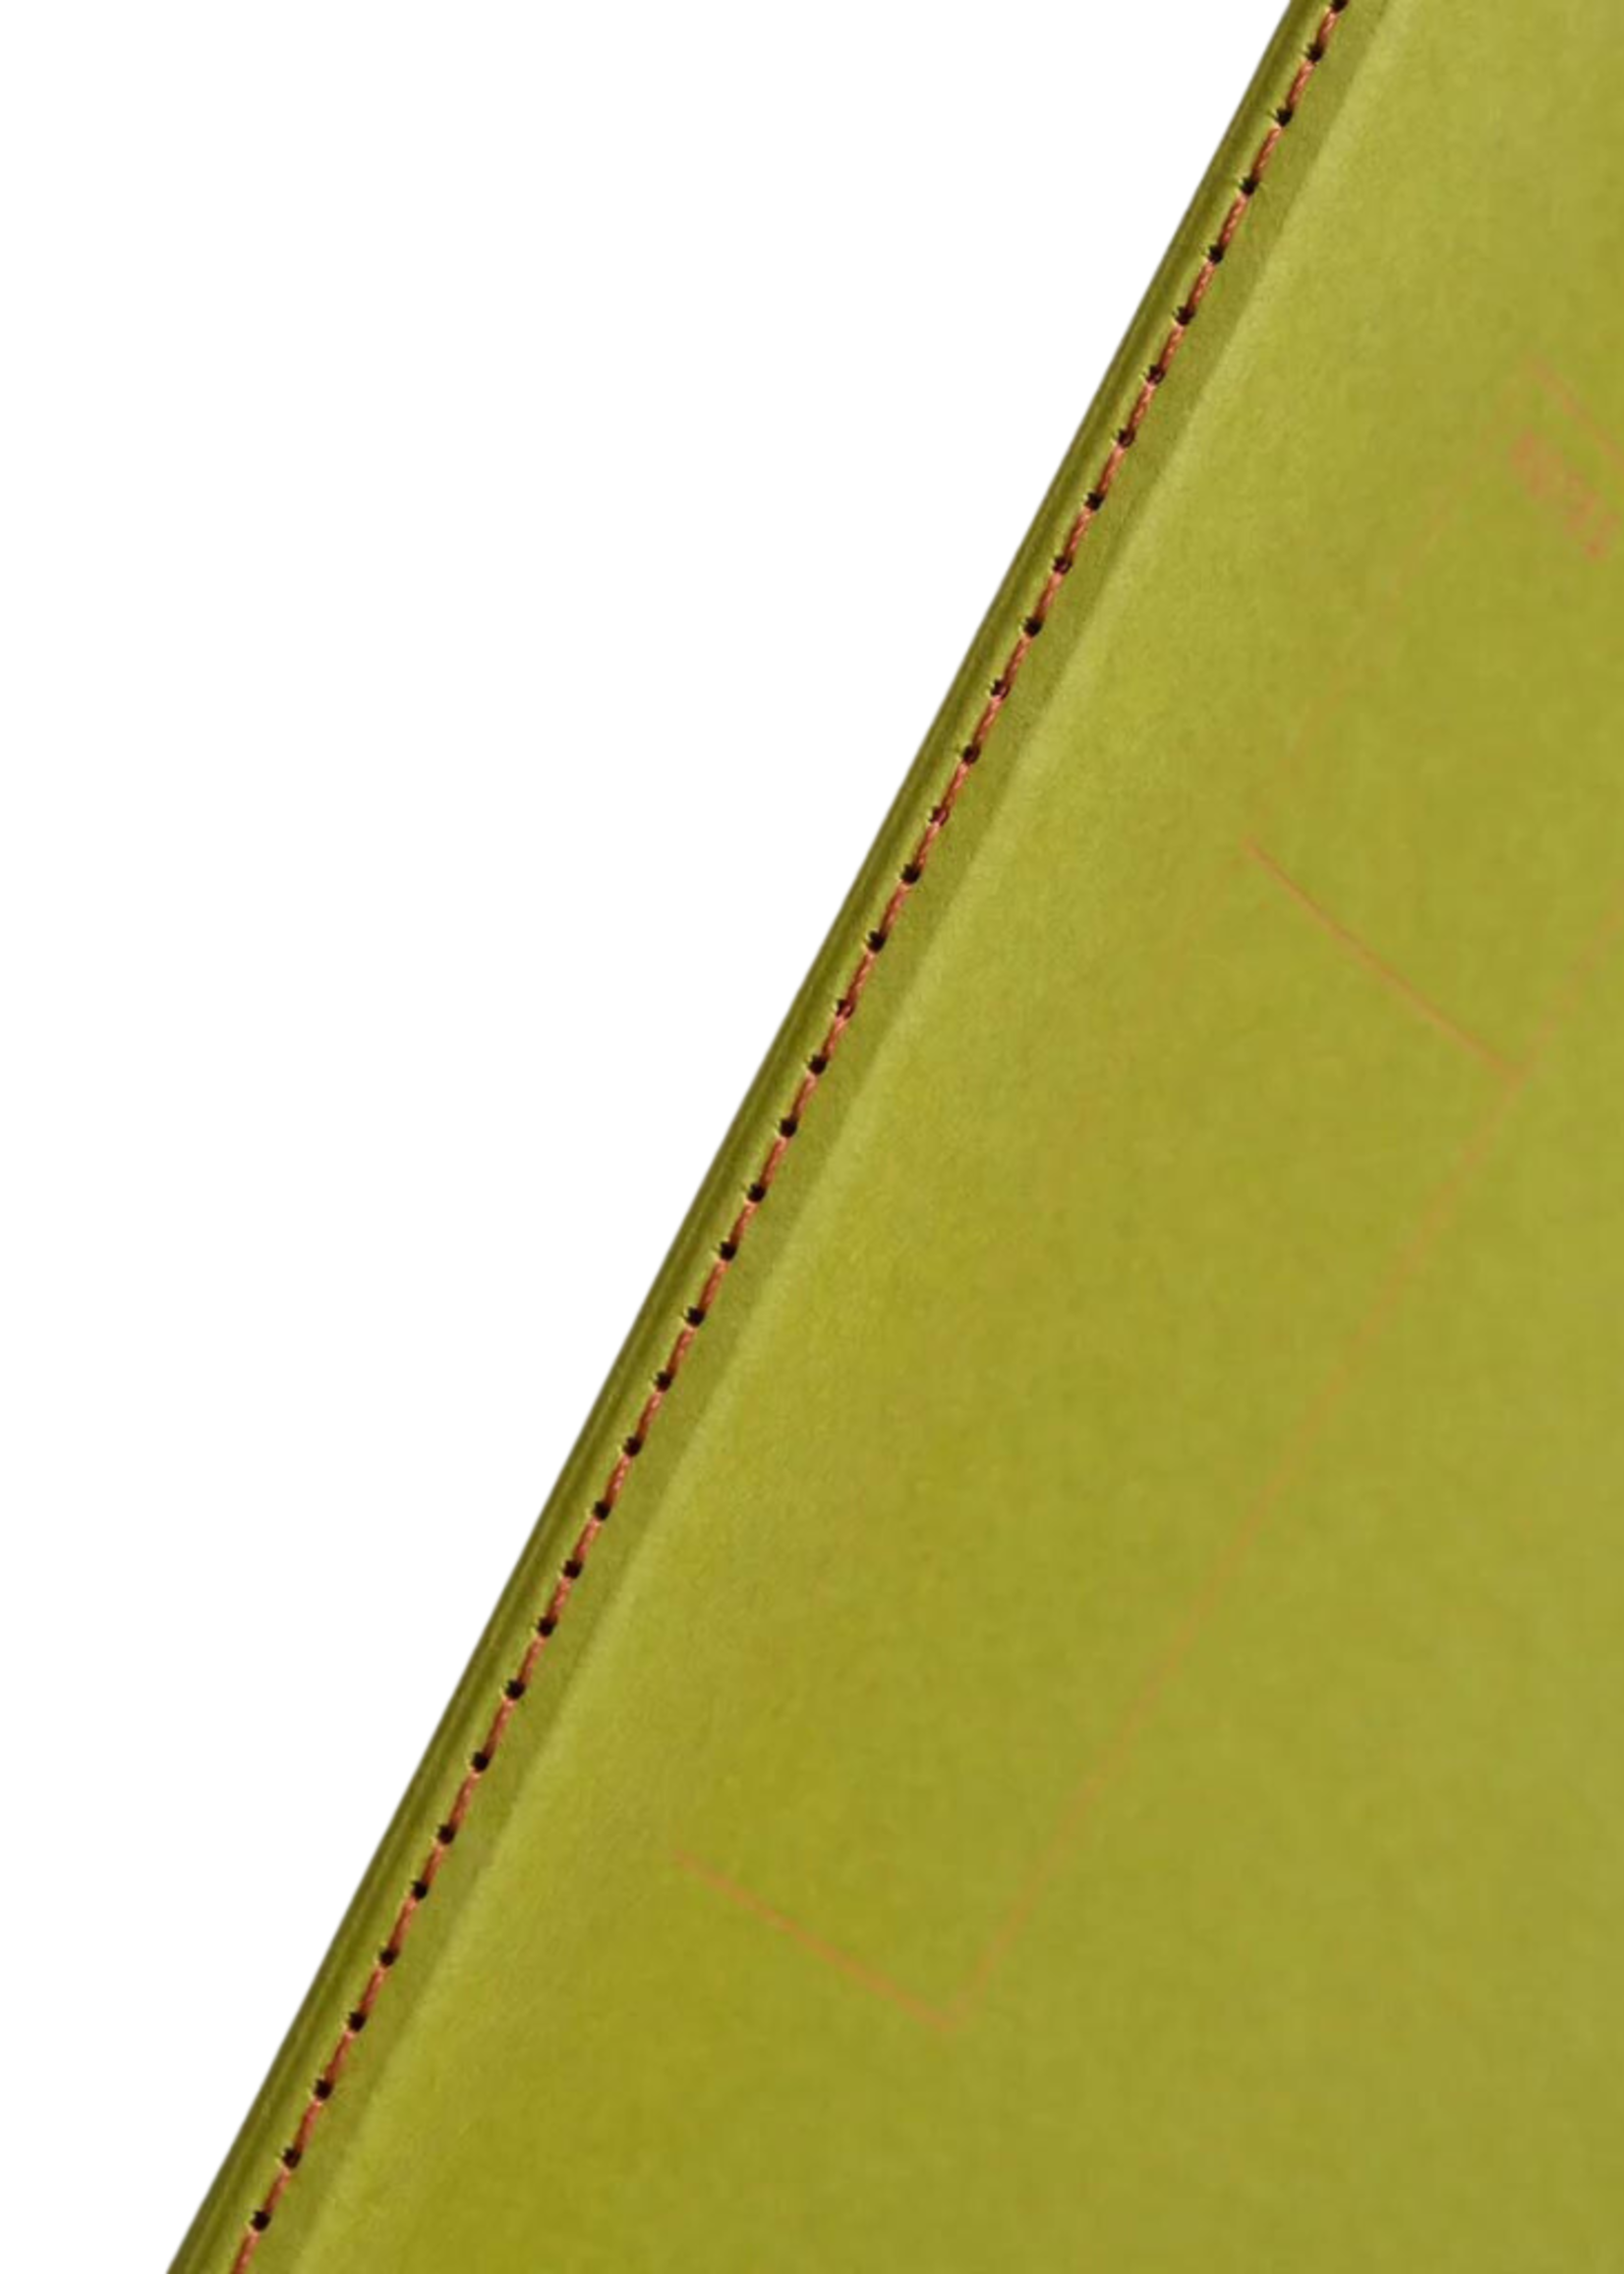 Vivid Studio/Papierniczeni Lekki Notebookl Kiwi l dots